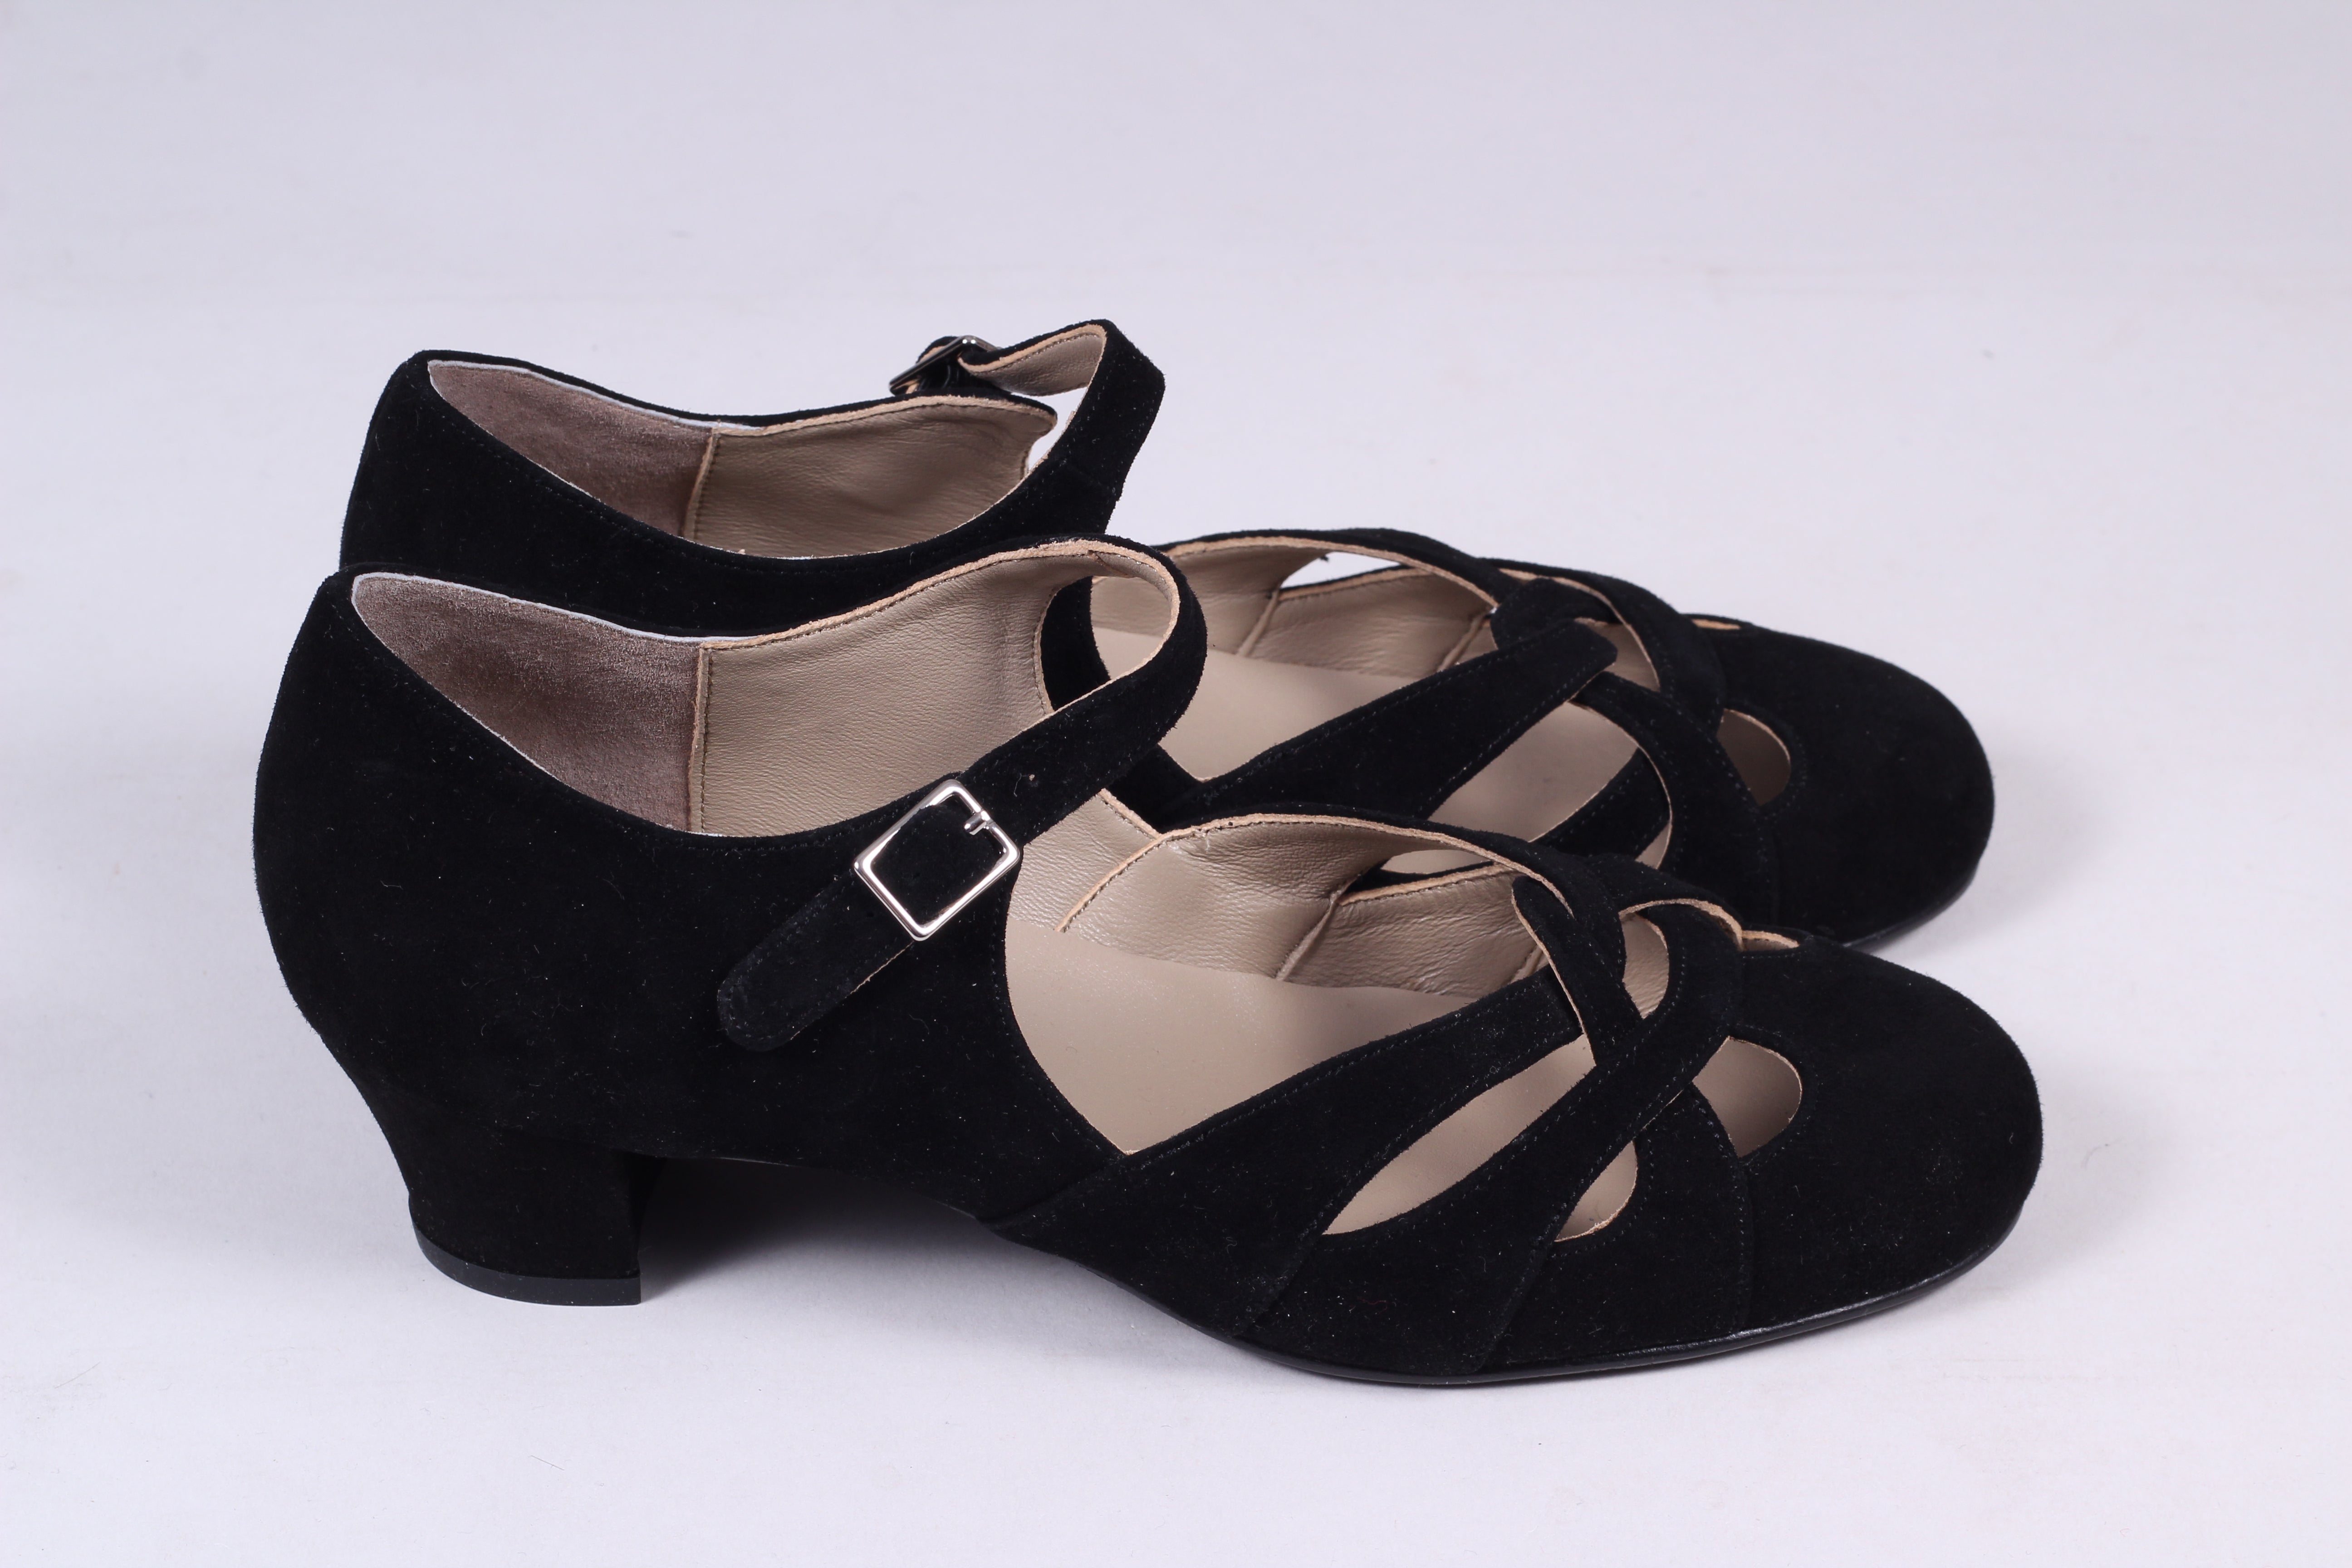 1930'er / 1940'er vintage style sandaler i ruskind - Sort - Ida